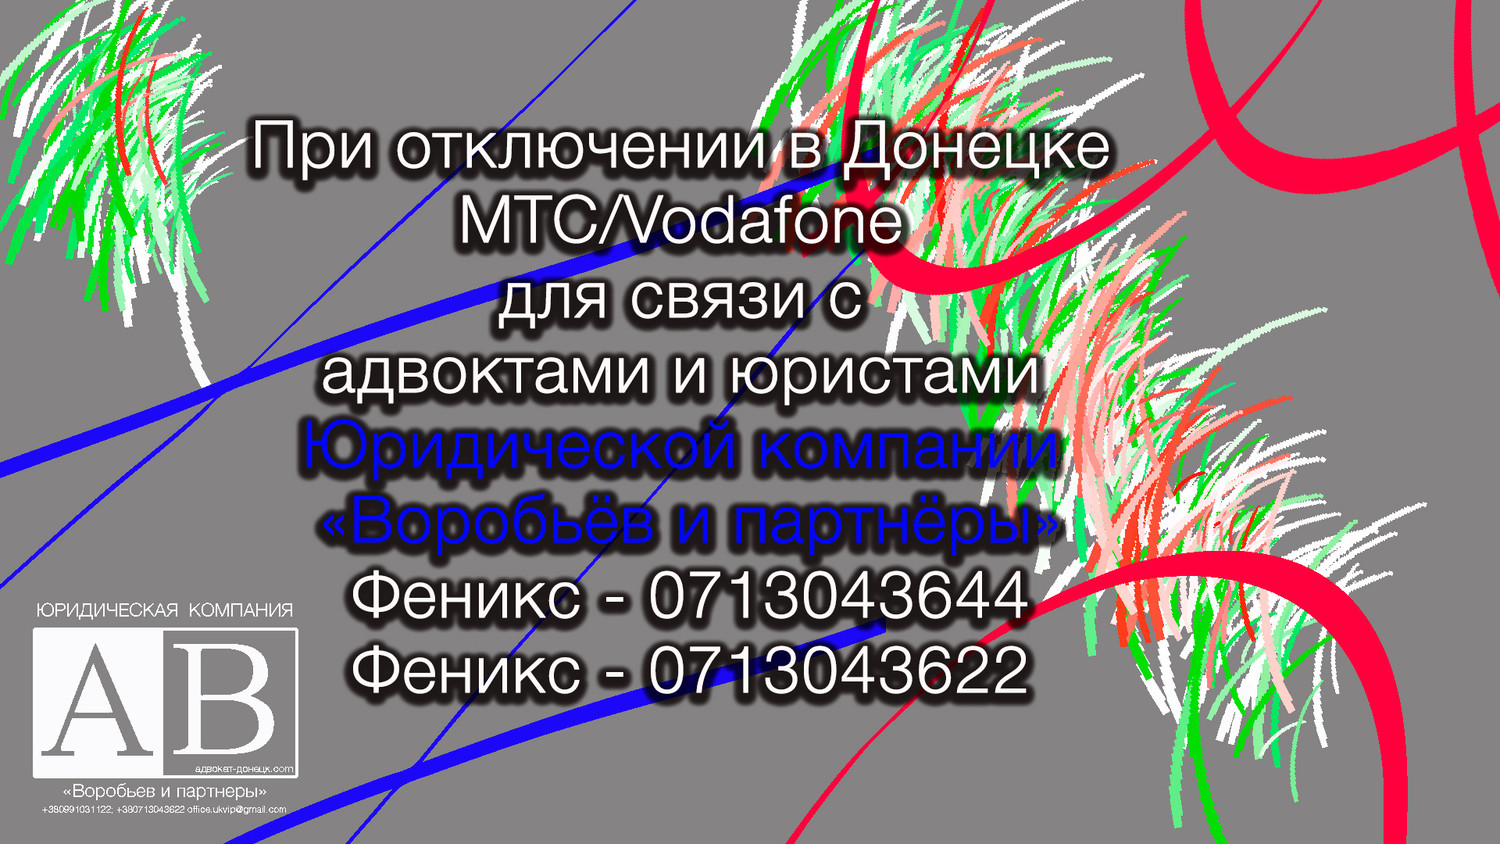 Телефоны адвокатов и юристов Донецка (Феникс)